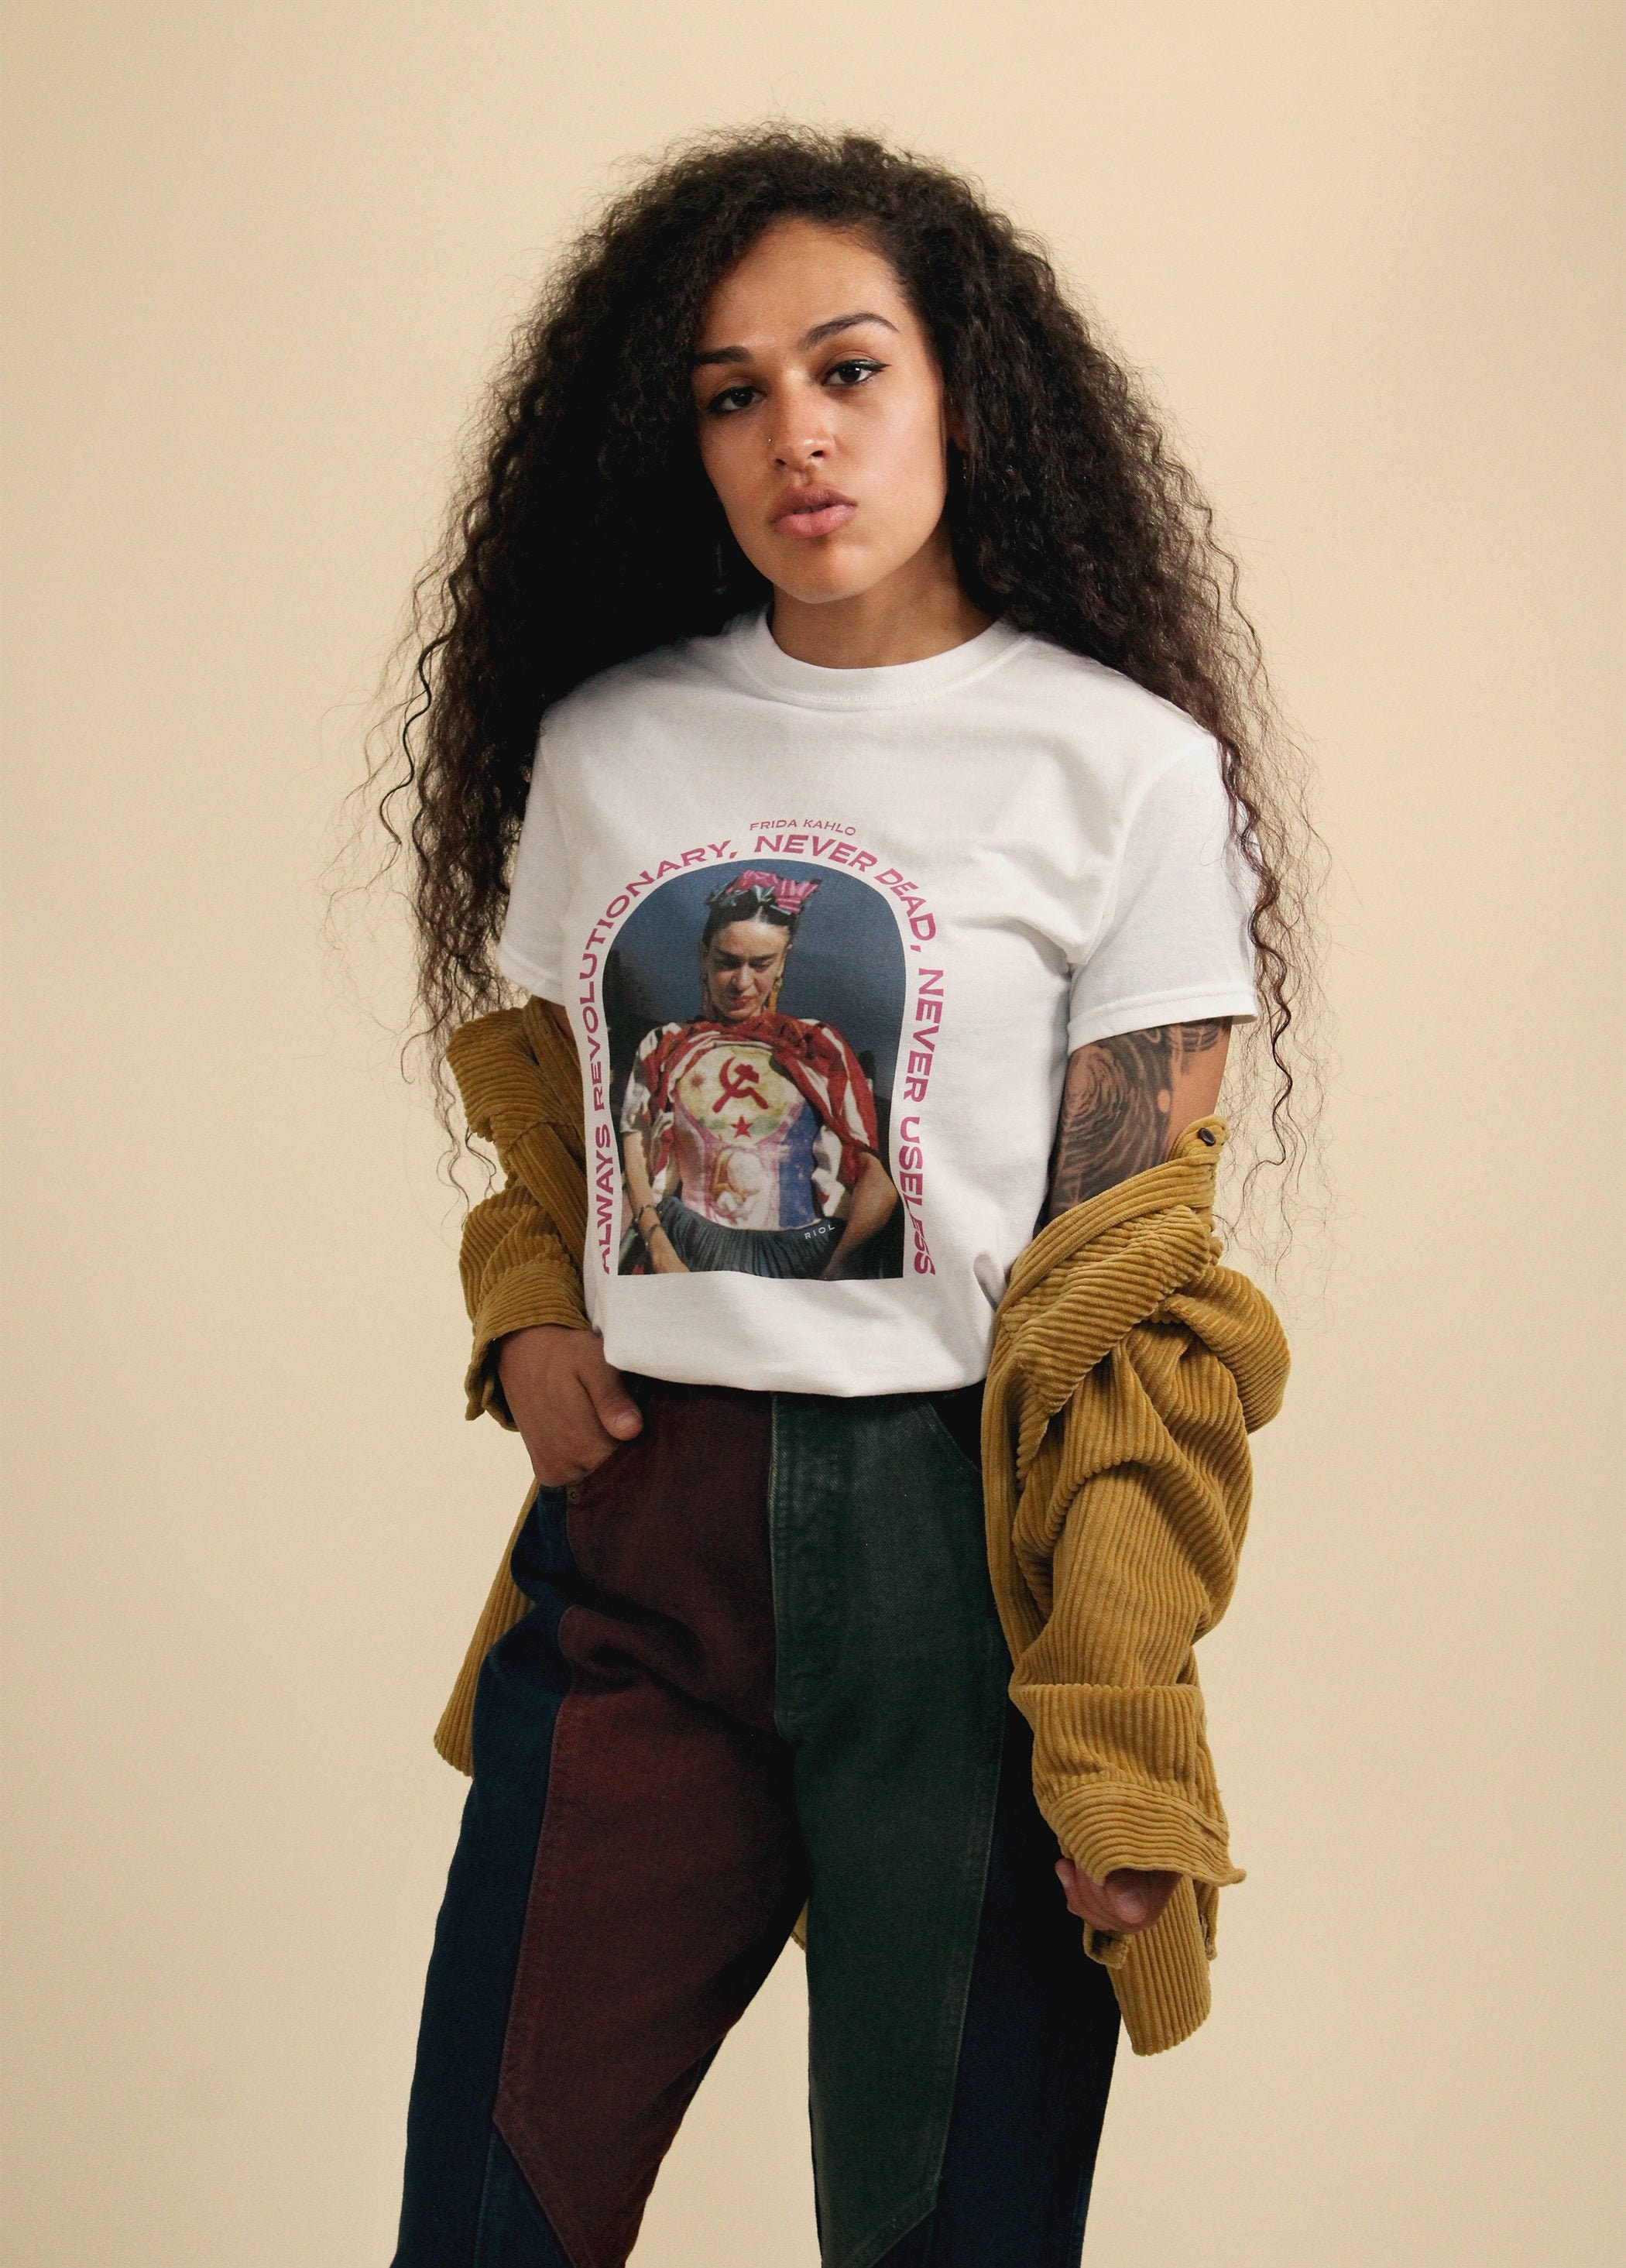 Camiseta Frida Kahlo / Hammer and Sickle Feminism - Etsy